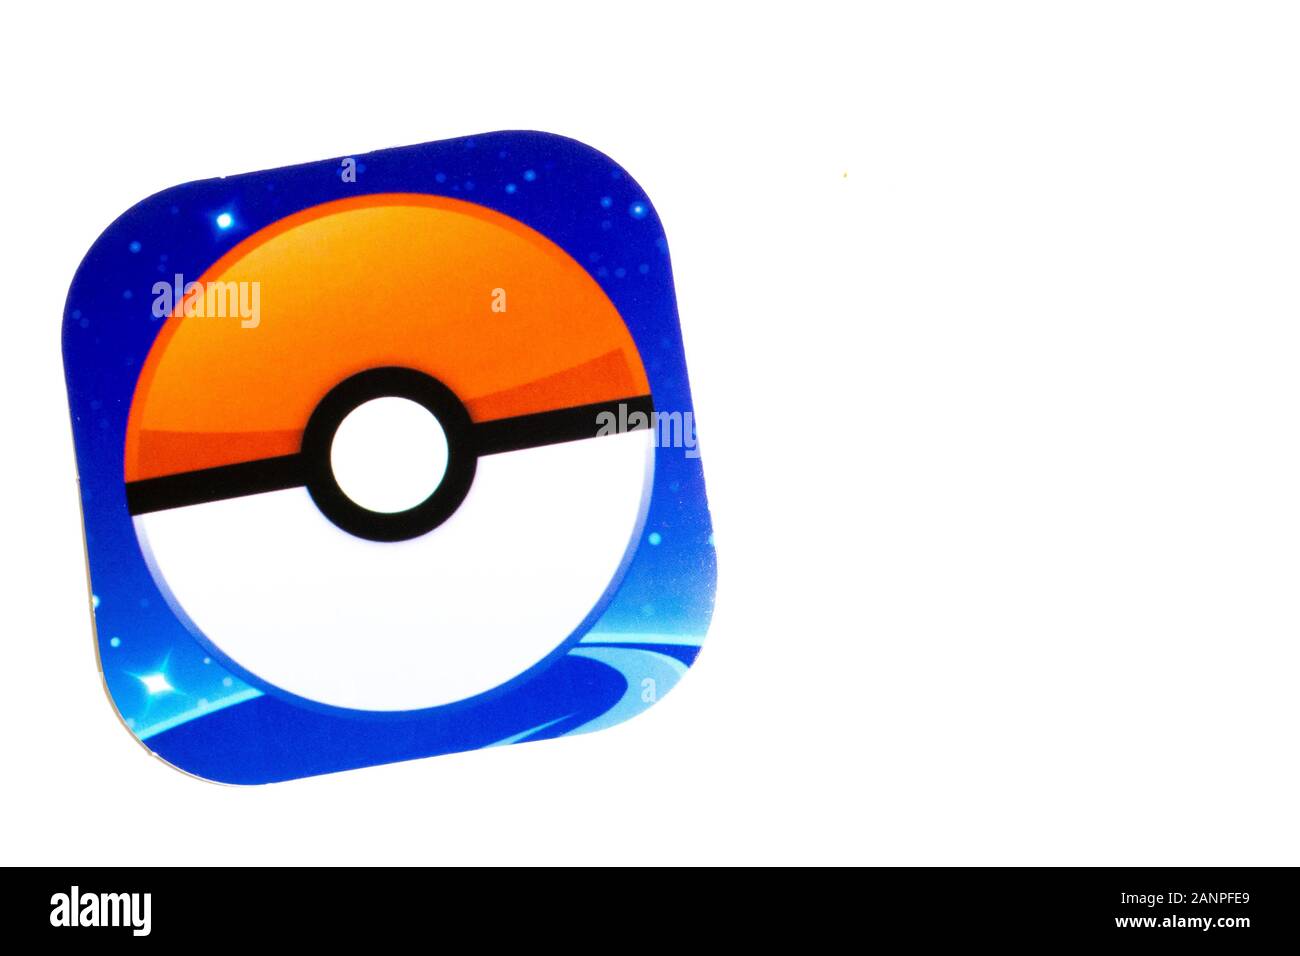 Logo pokemon go immagini e fotografie stock ad alta risoluzione - Alamy